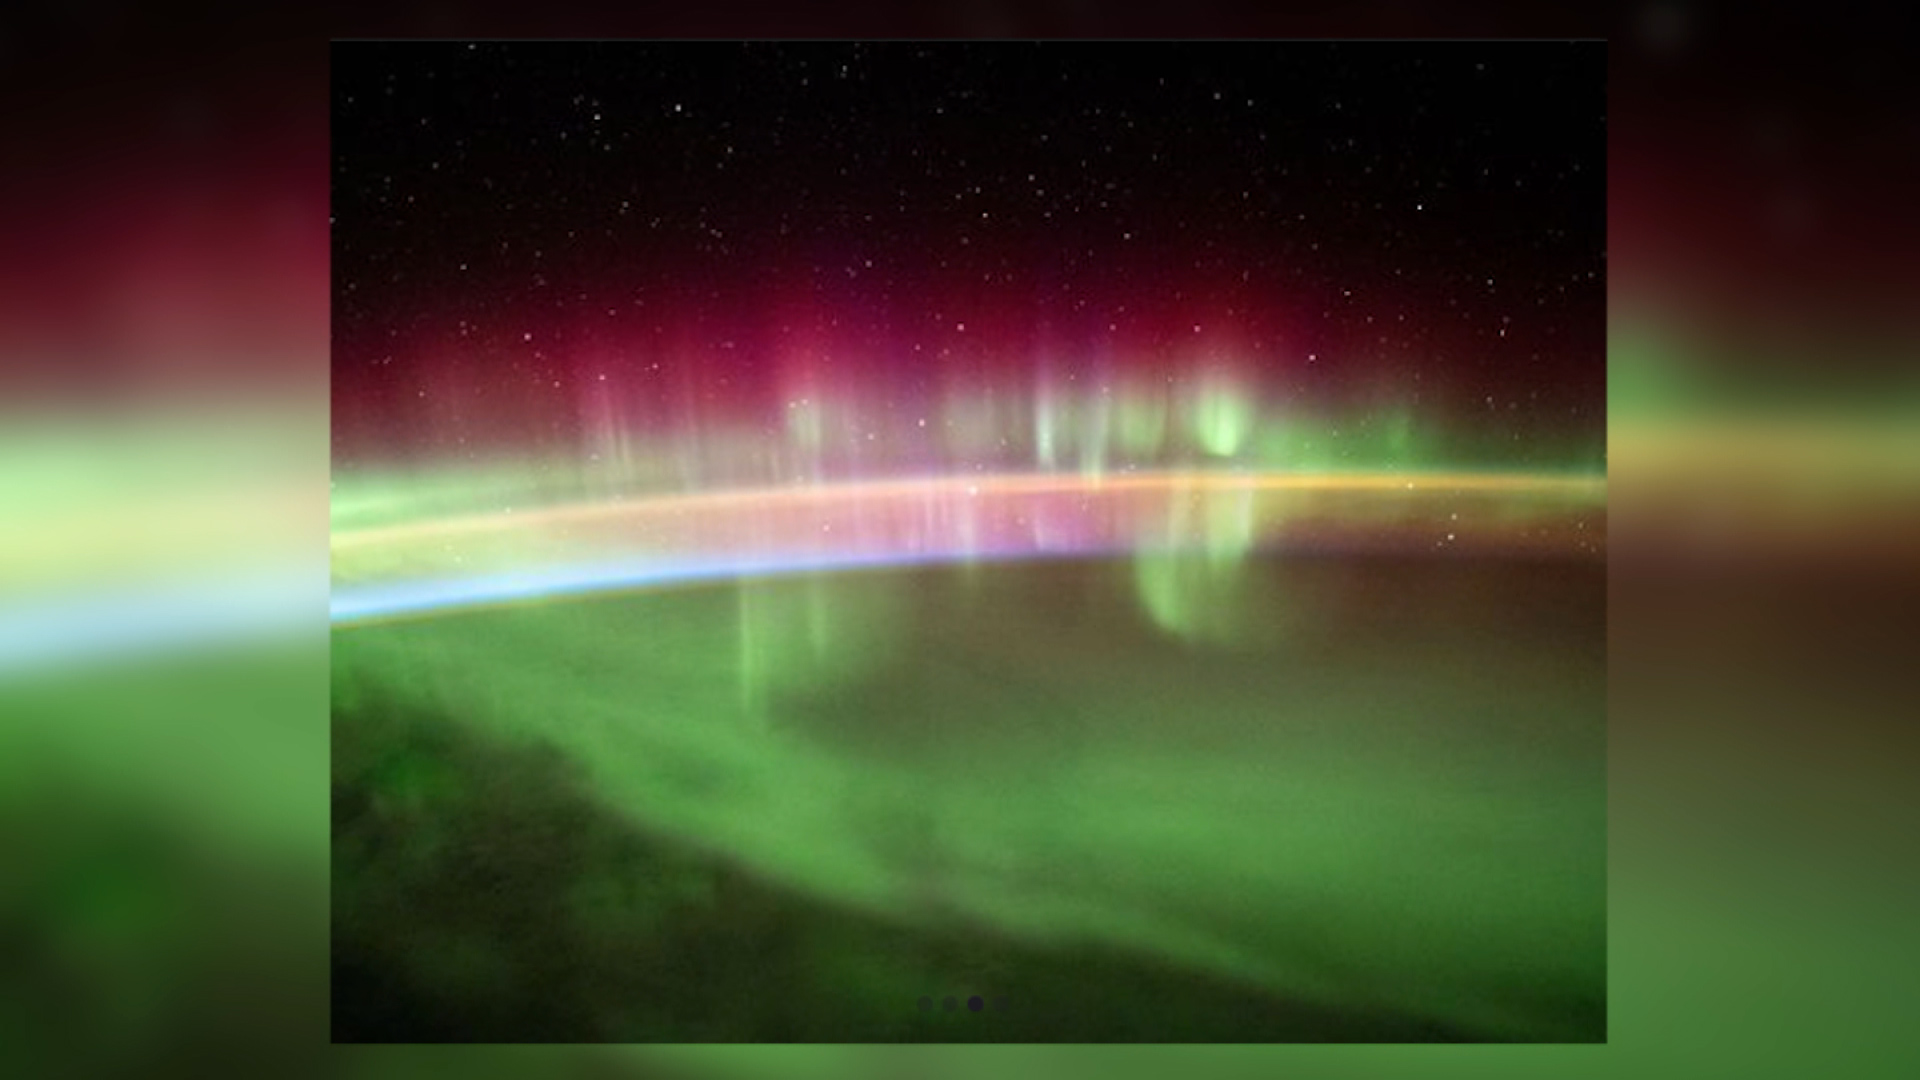 La espectacular aurora austral captada desde una base científica china en  la Antártida, Noticias Univision